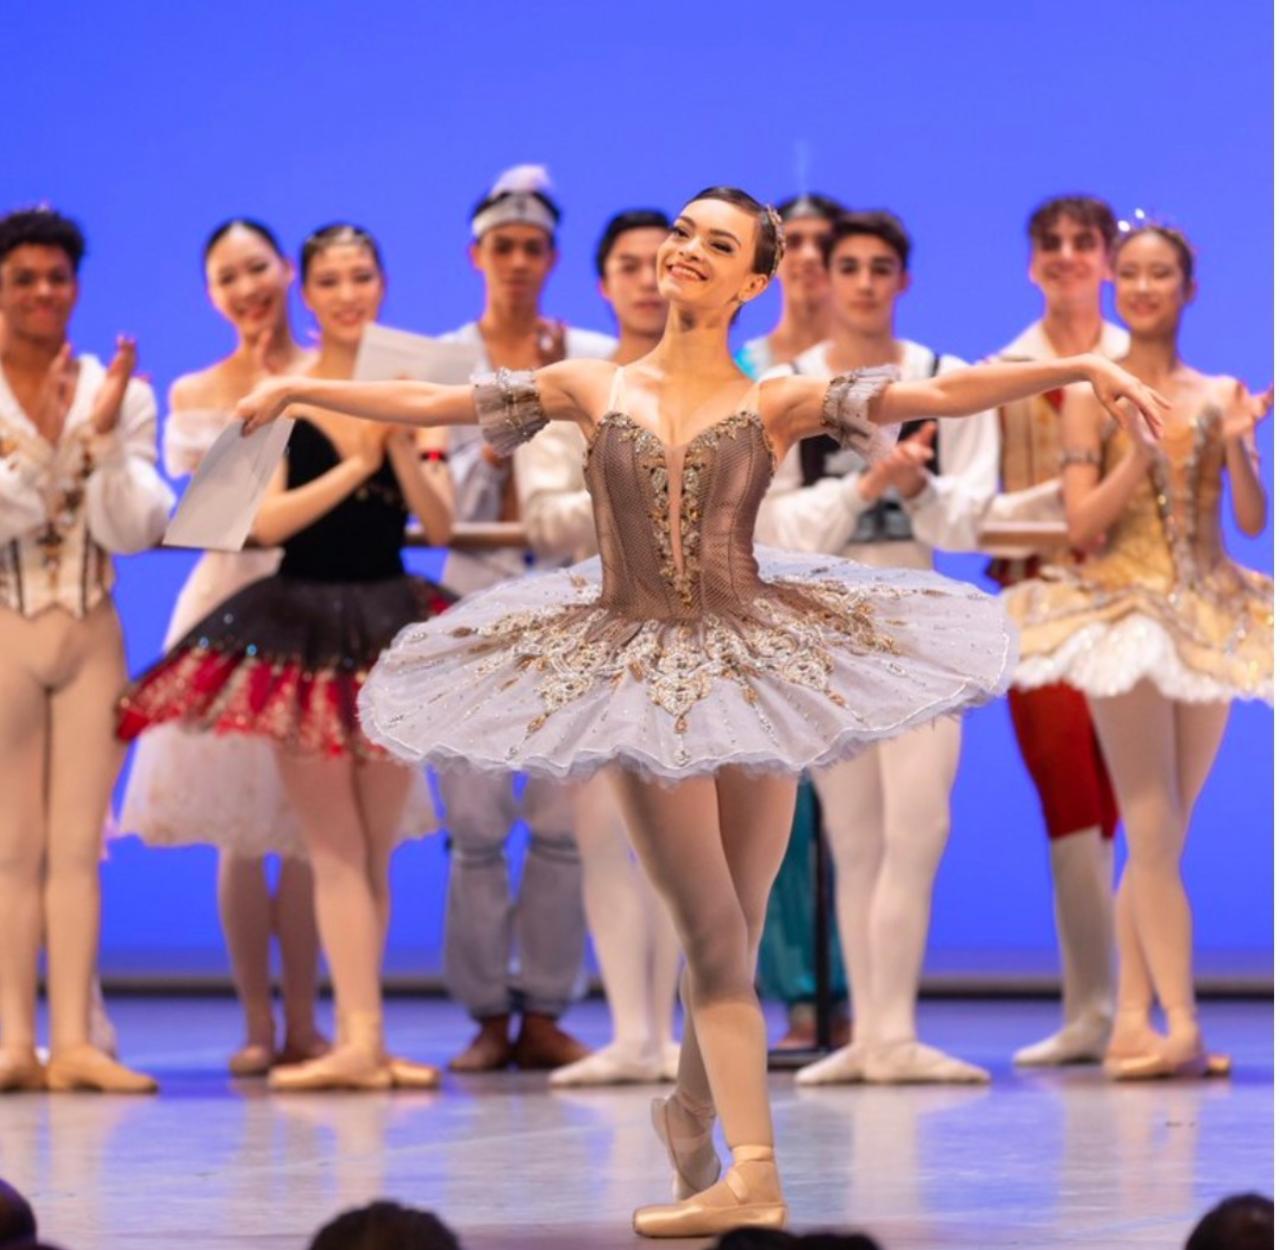 Ana Luísa Negrão, bailarina da EFG em Artes Basileu França, é premiada em competição de dança na Suíça; também aluna da escola, Lucía Abril Marcucci ficou entre as semifinalistas (Foto: SEDI)